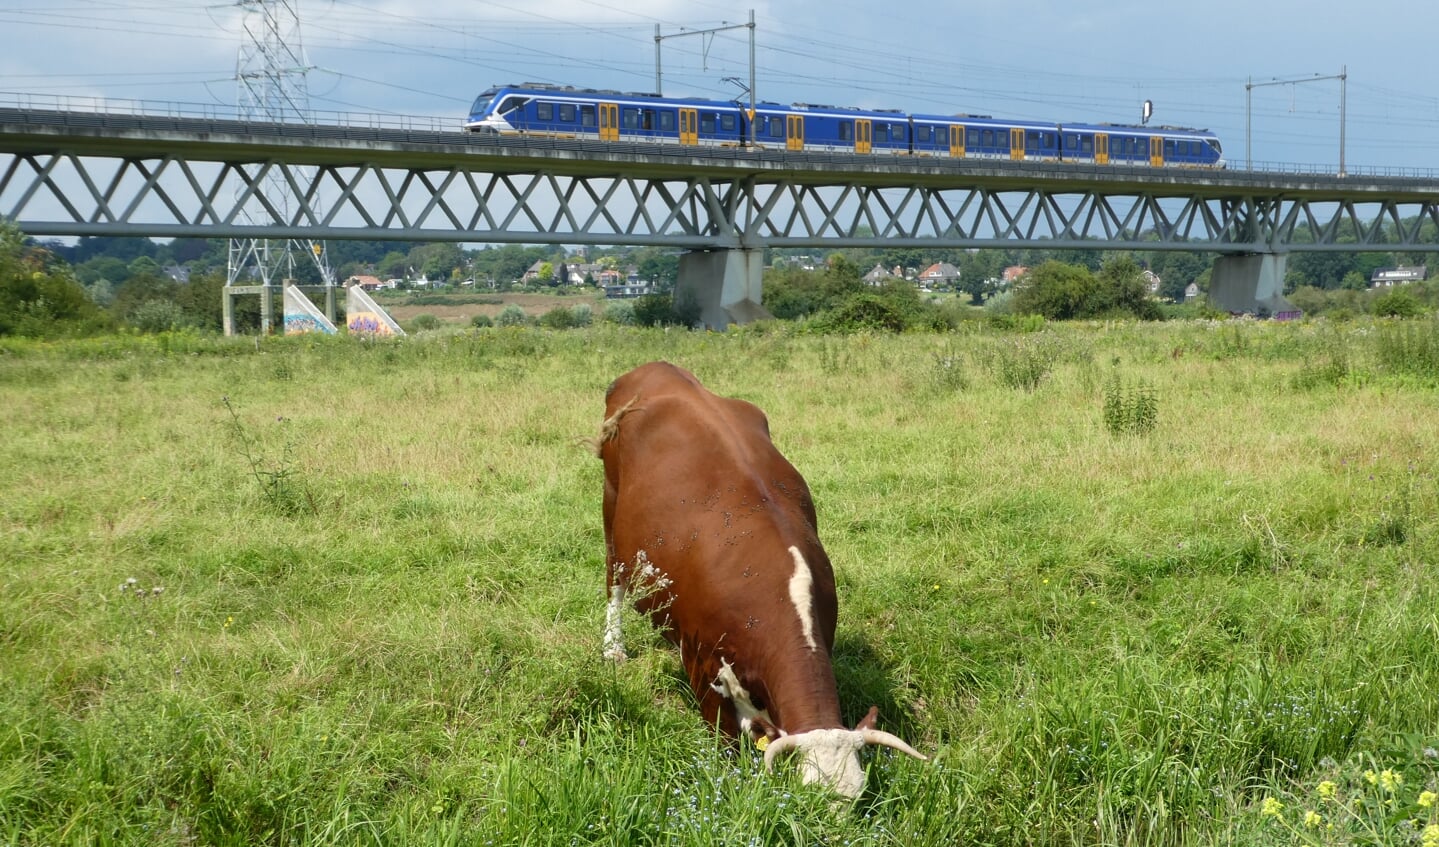 Tijdens onze klompenpadwandeling in Oosterbeek op 4 september zagen we deze dorstige koe met op achtergrond passerende trein.